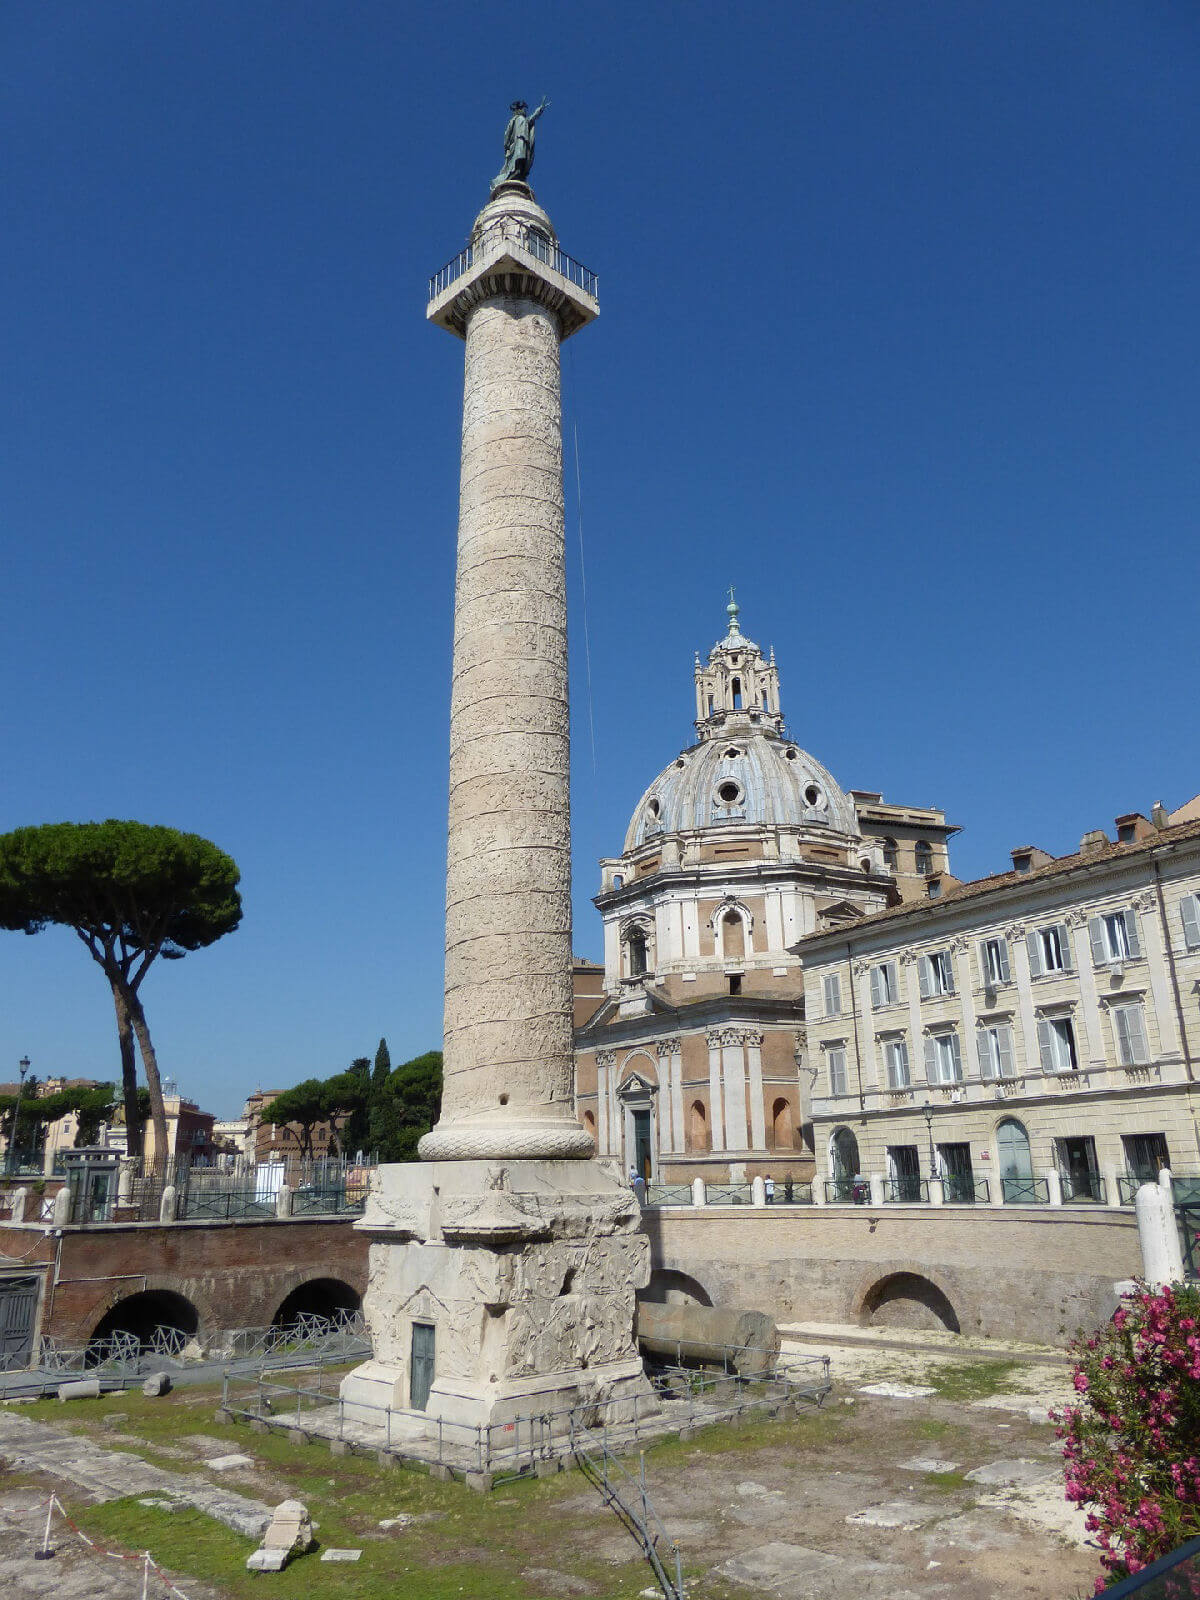 Trajan's Column in the Roman Forum in Rome, Italy